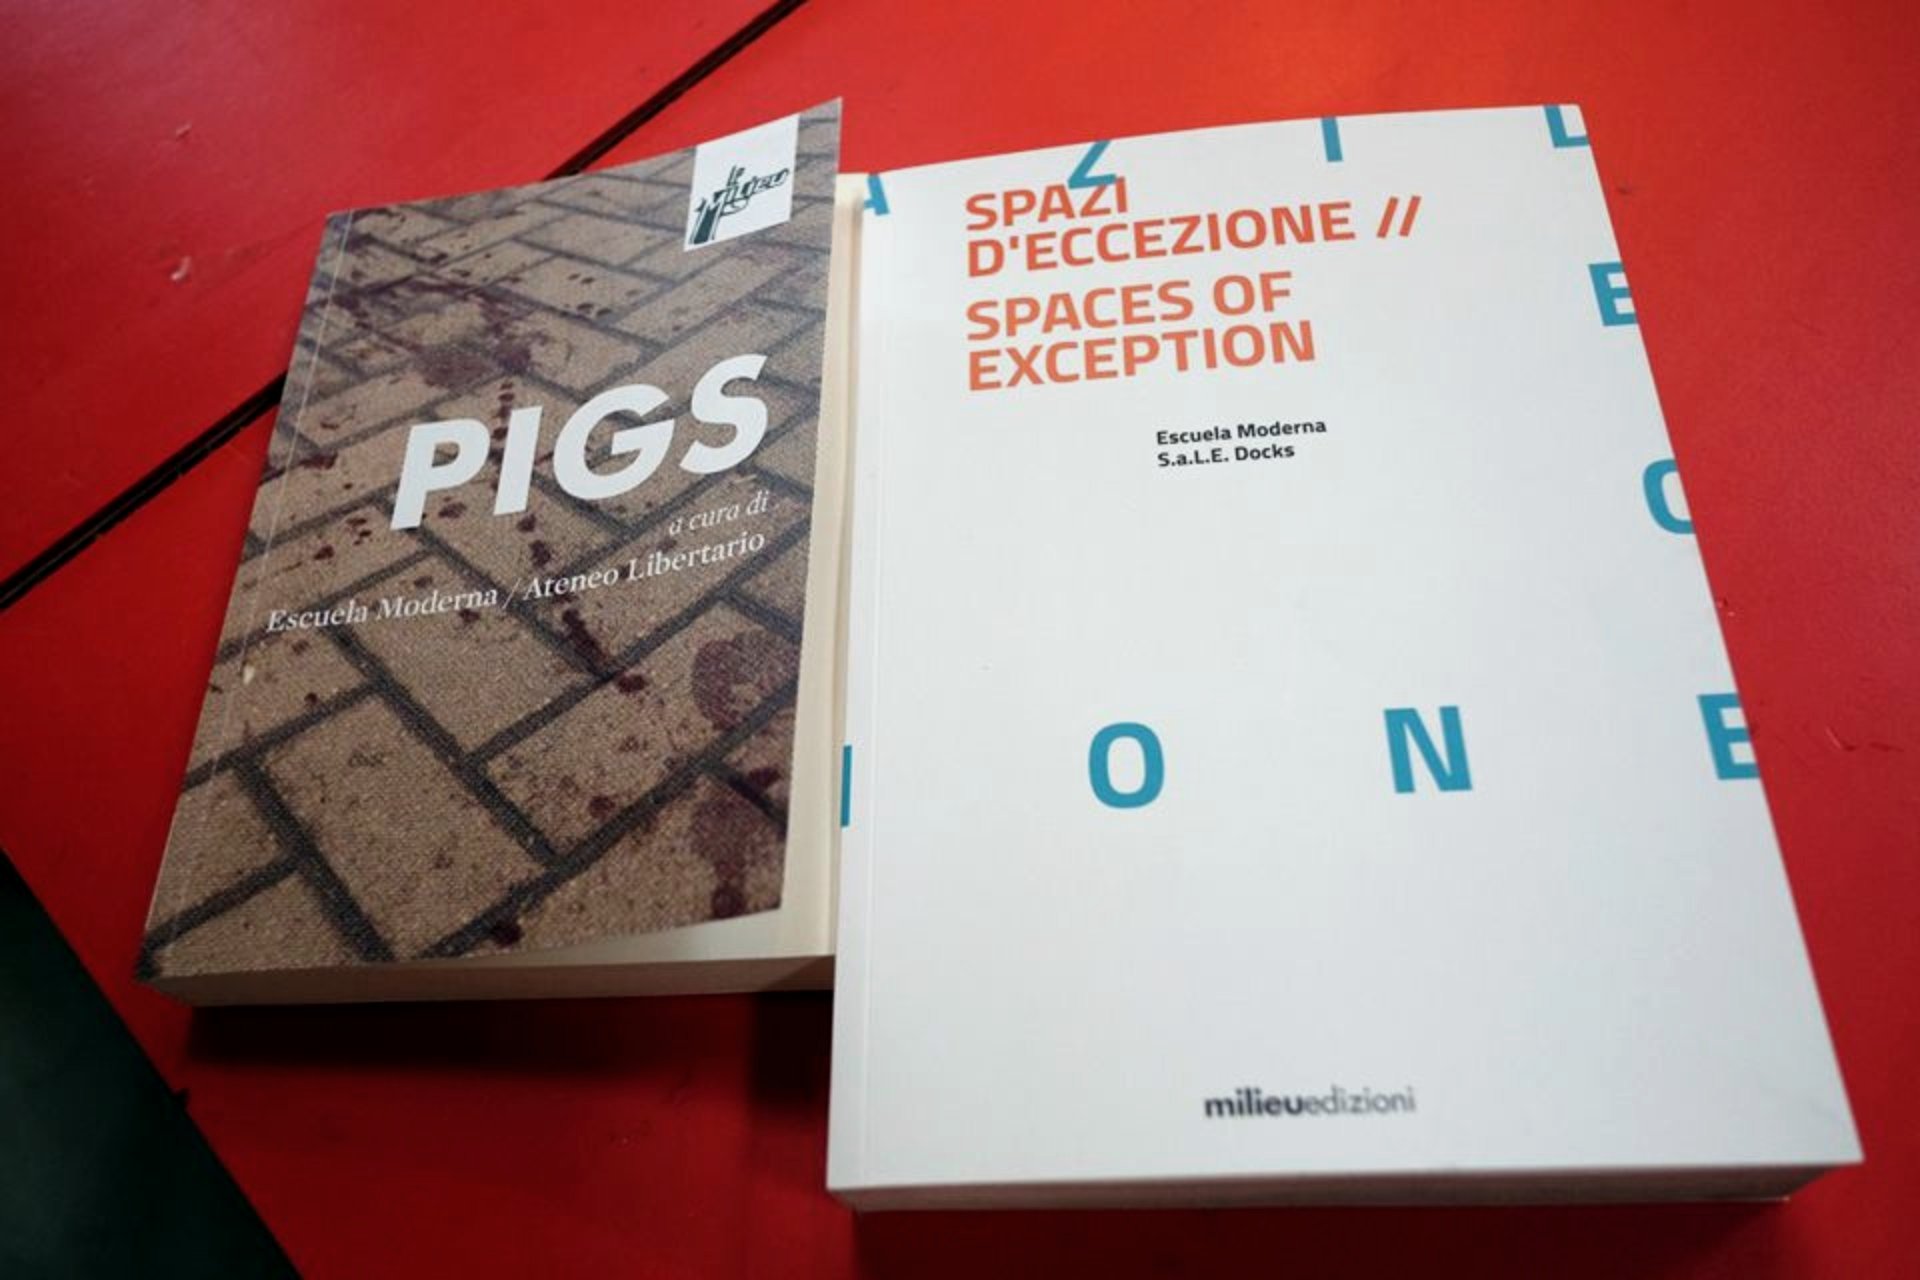 PIGS e Spazi d’eccezione alla Triennale di Milano